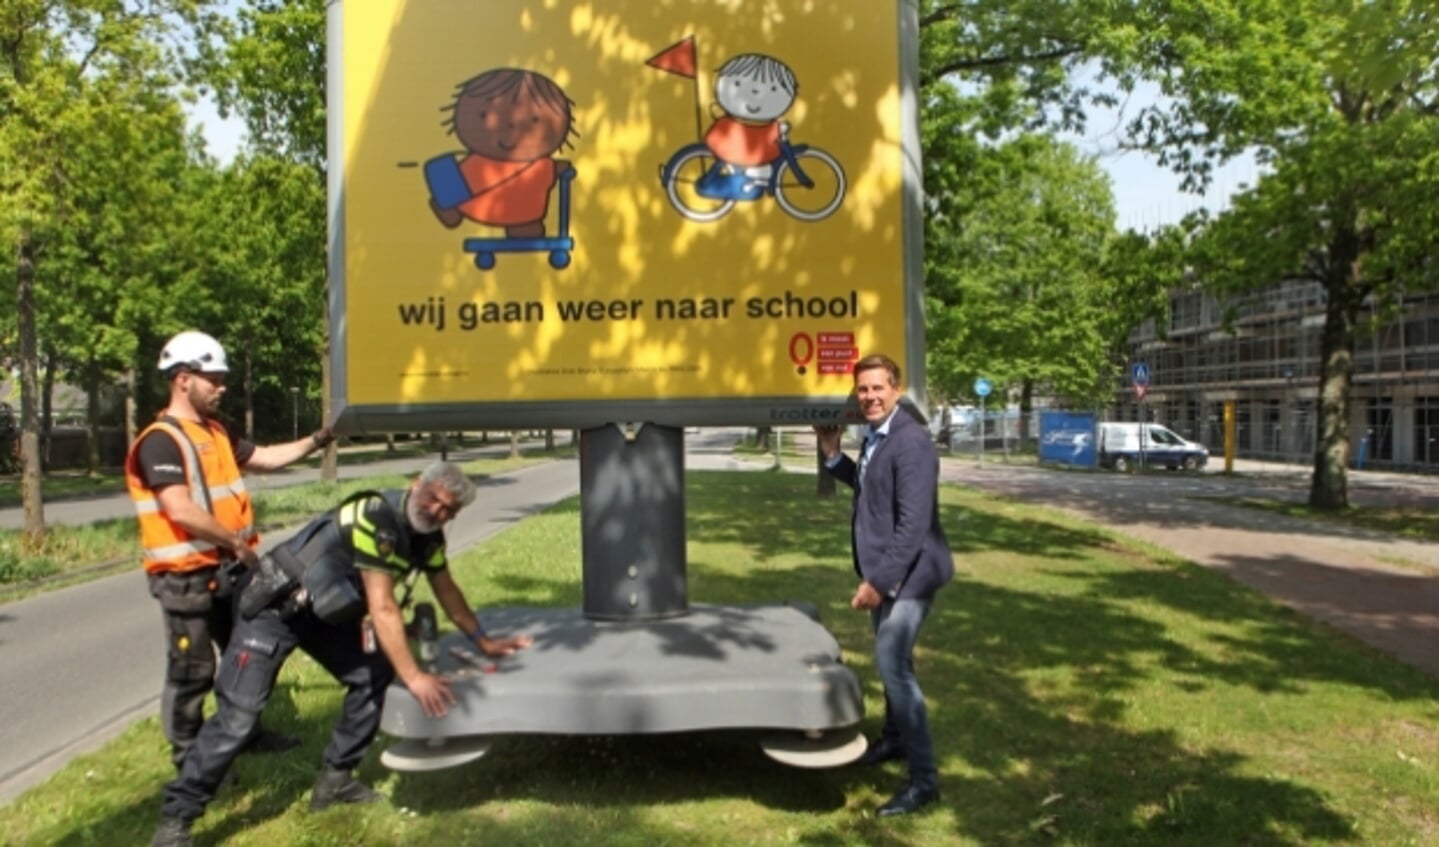 De campagne 'Wij gaan weer naar school' vraagt extra aandacht voor de verkeersveiligheid rondom scholen. Foto: Peter van Zetten